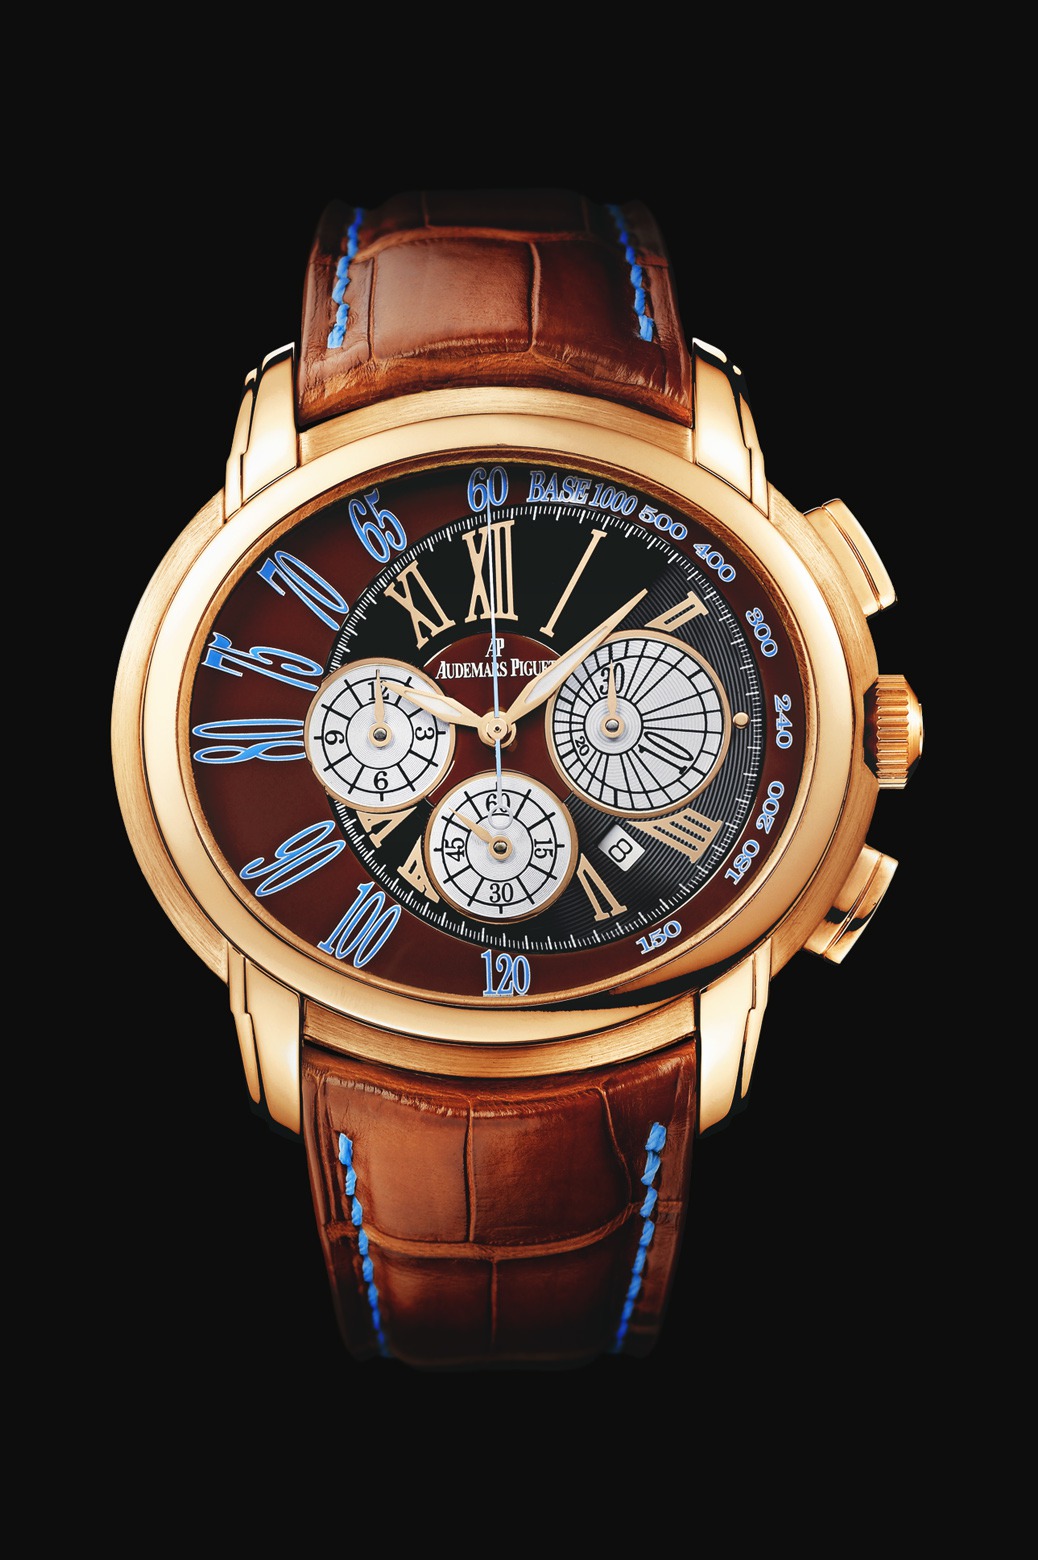 Audemars Piguet Millenary Chronograph Pink Gold watch REF: 26145OR.OO.D095CR.01